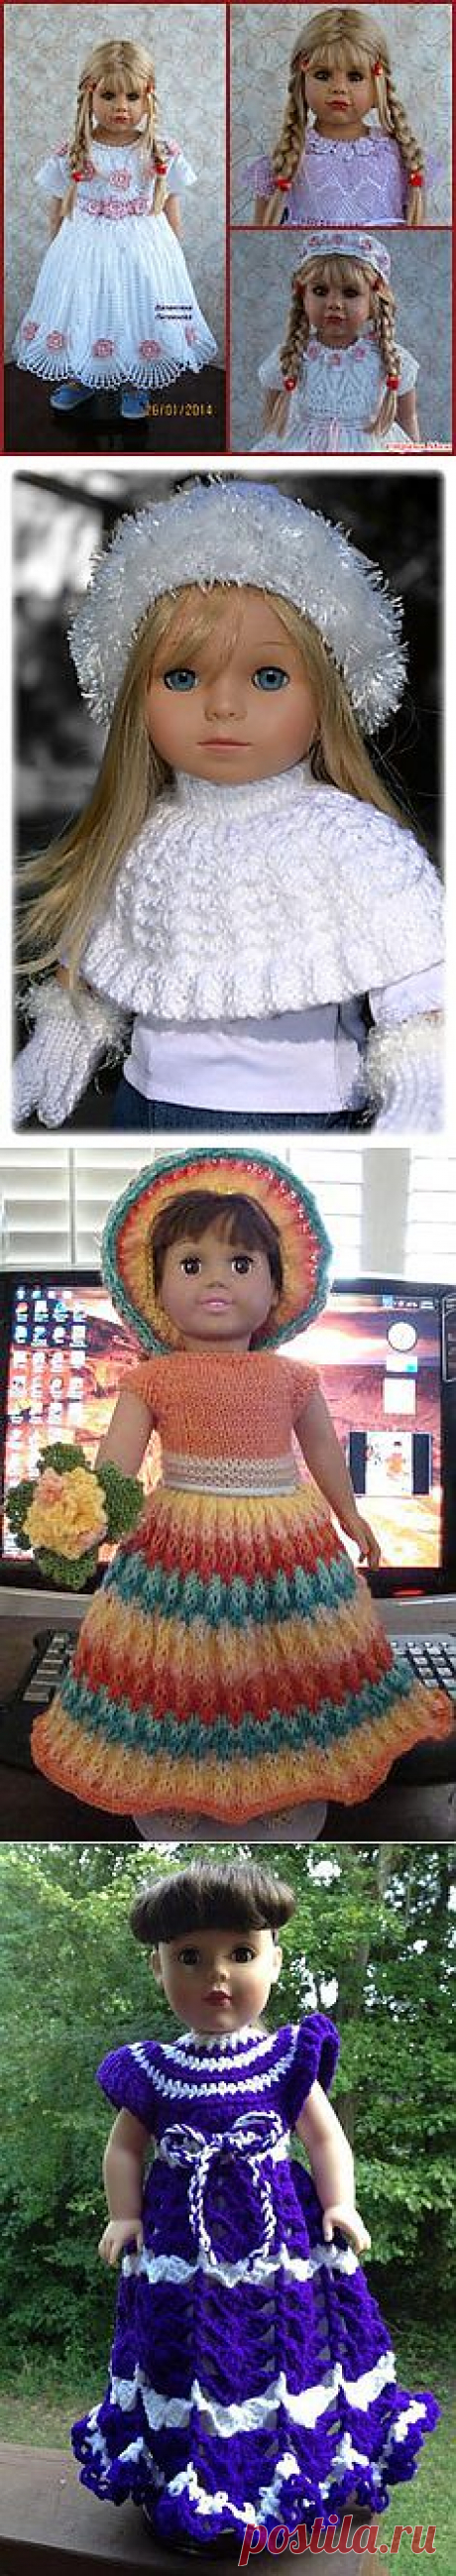 Crochet Toys American Girl